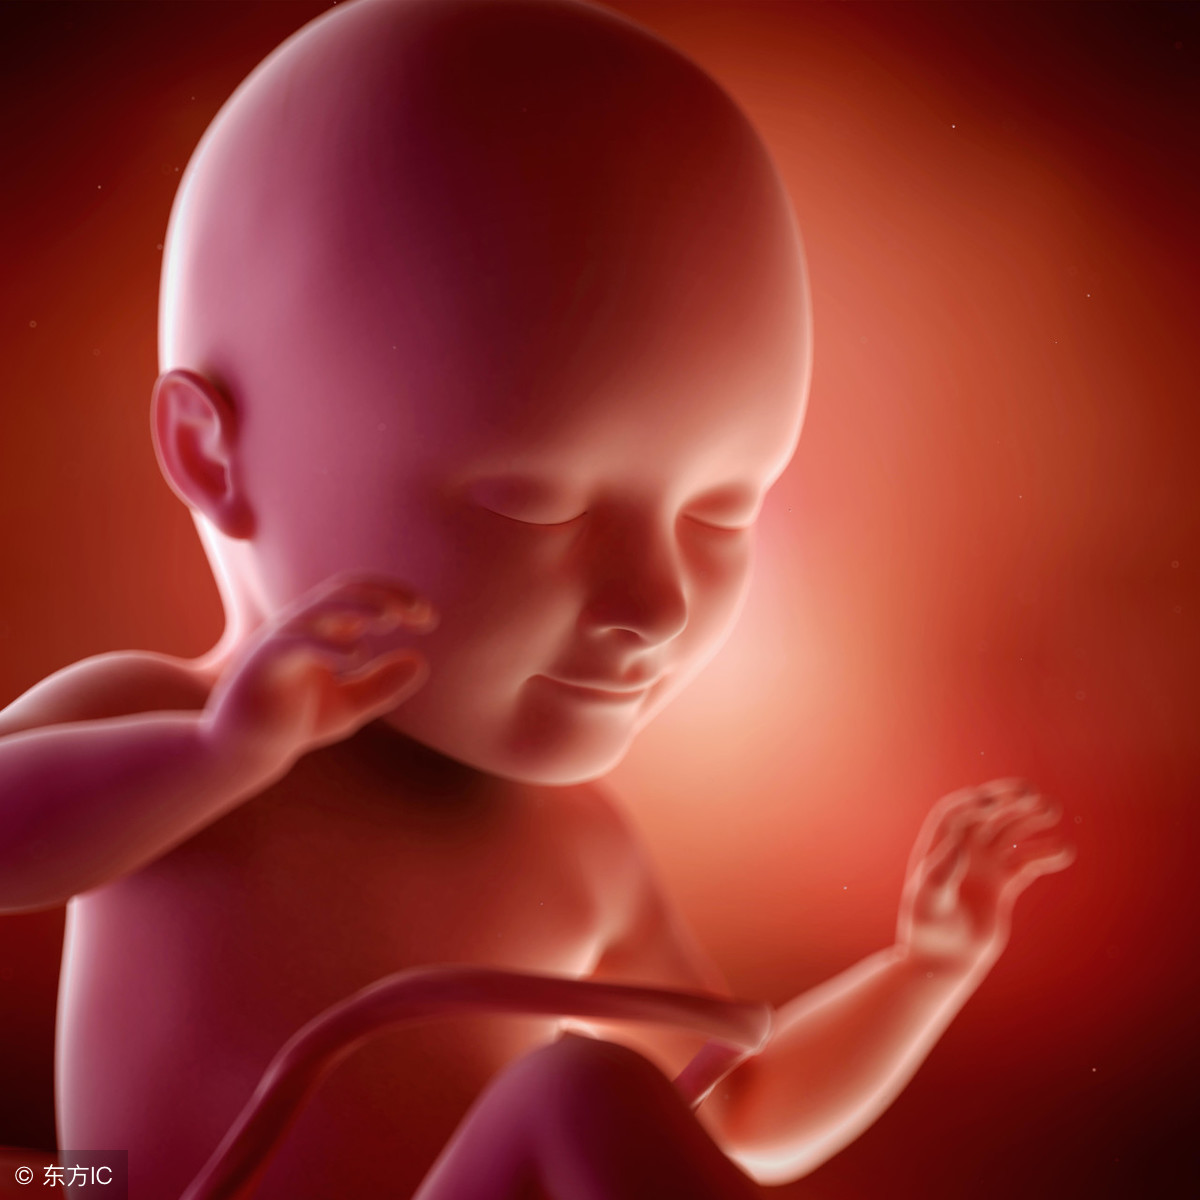 30周的胎儿从外观看就是一个小人了,有的早产宝宝生下来还有生存的